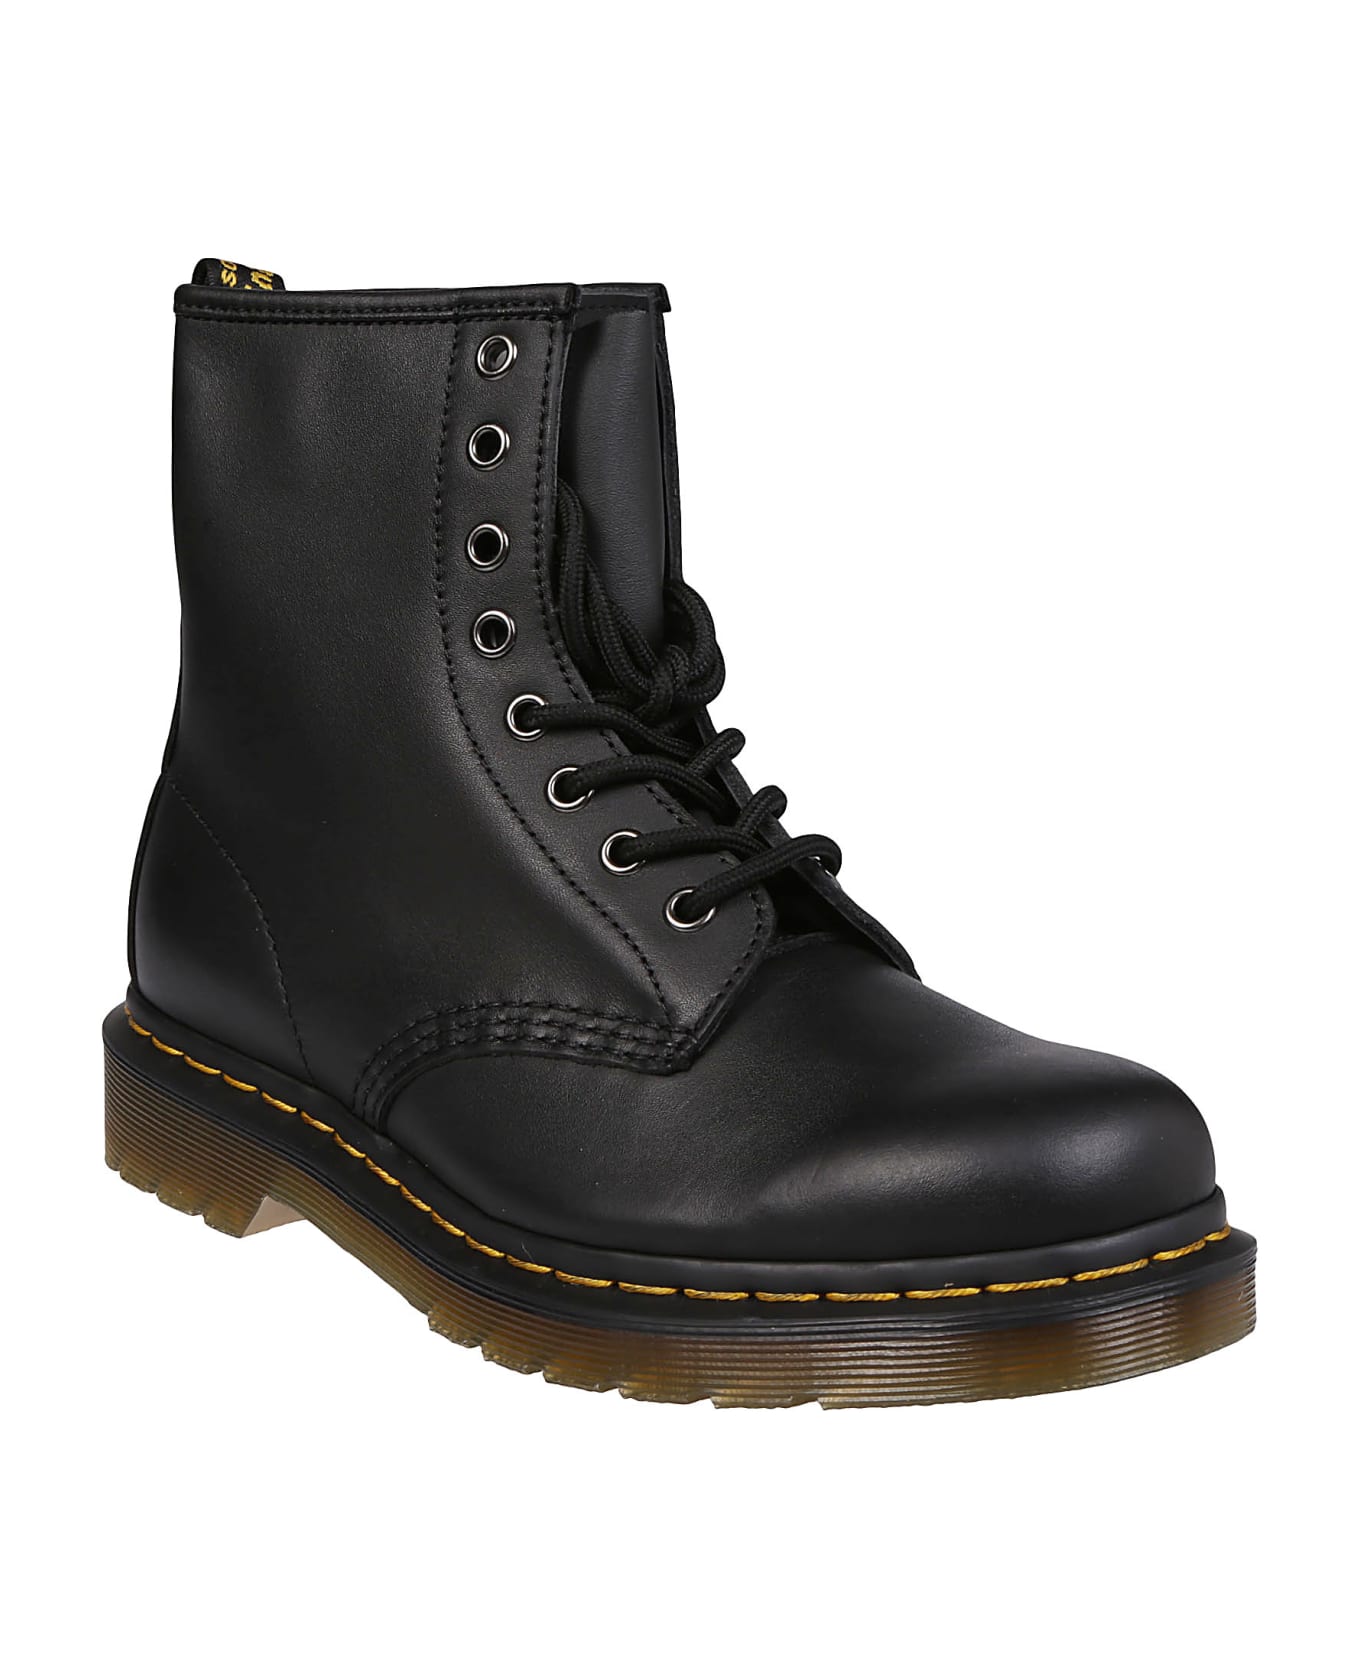 Dr. Martens 1460 Combat Boots - Black